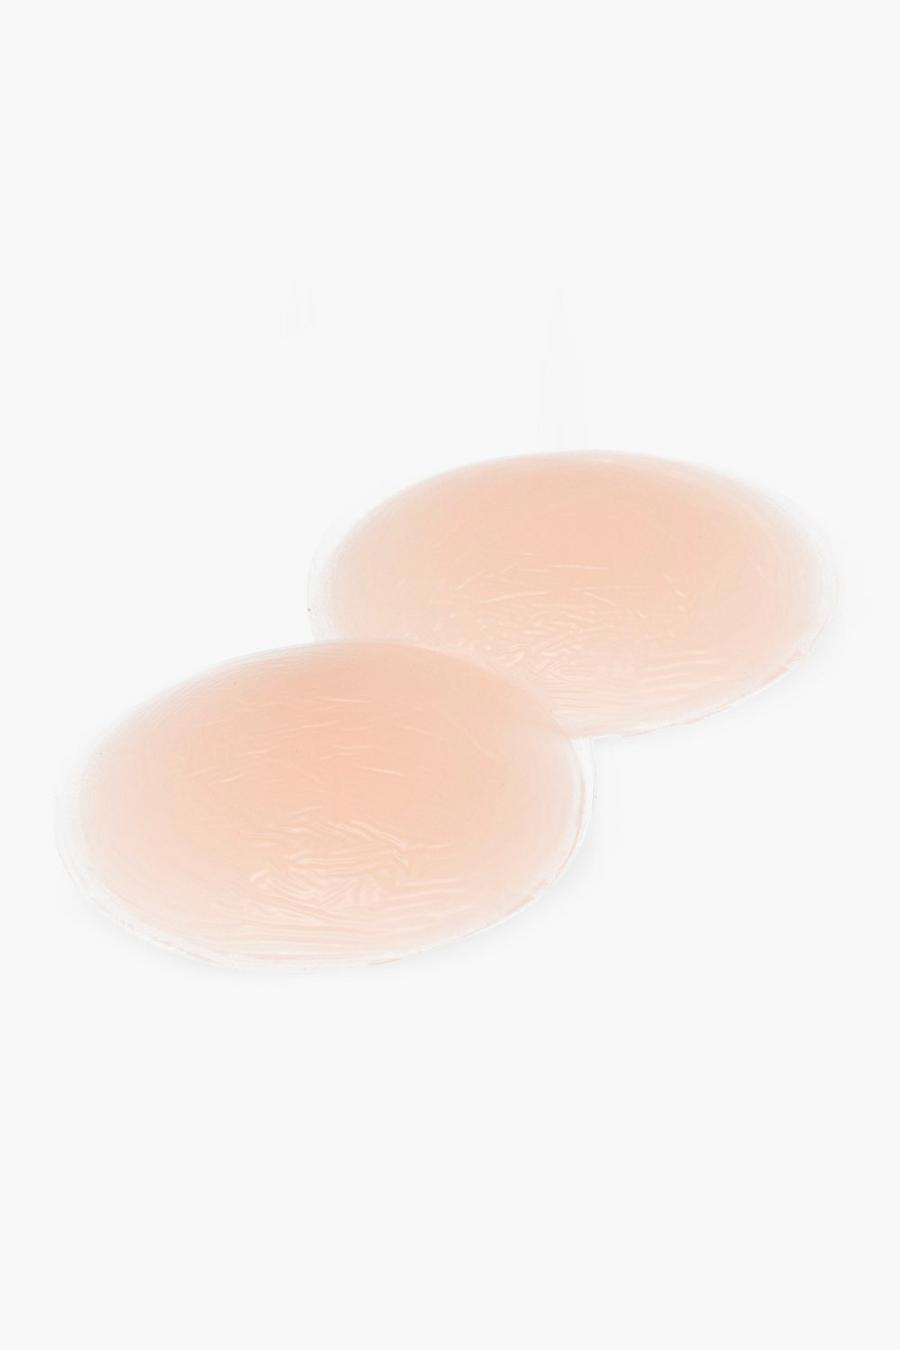 Self-Adhesive Reusable Nipple Covers